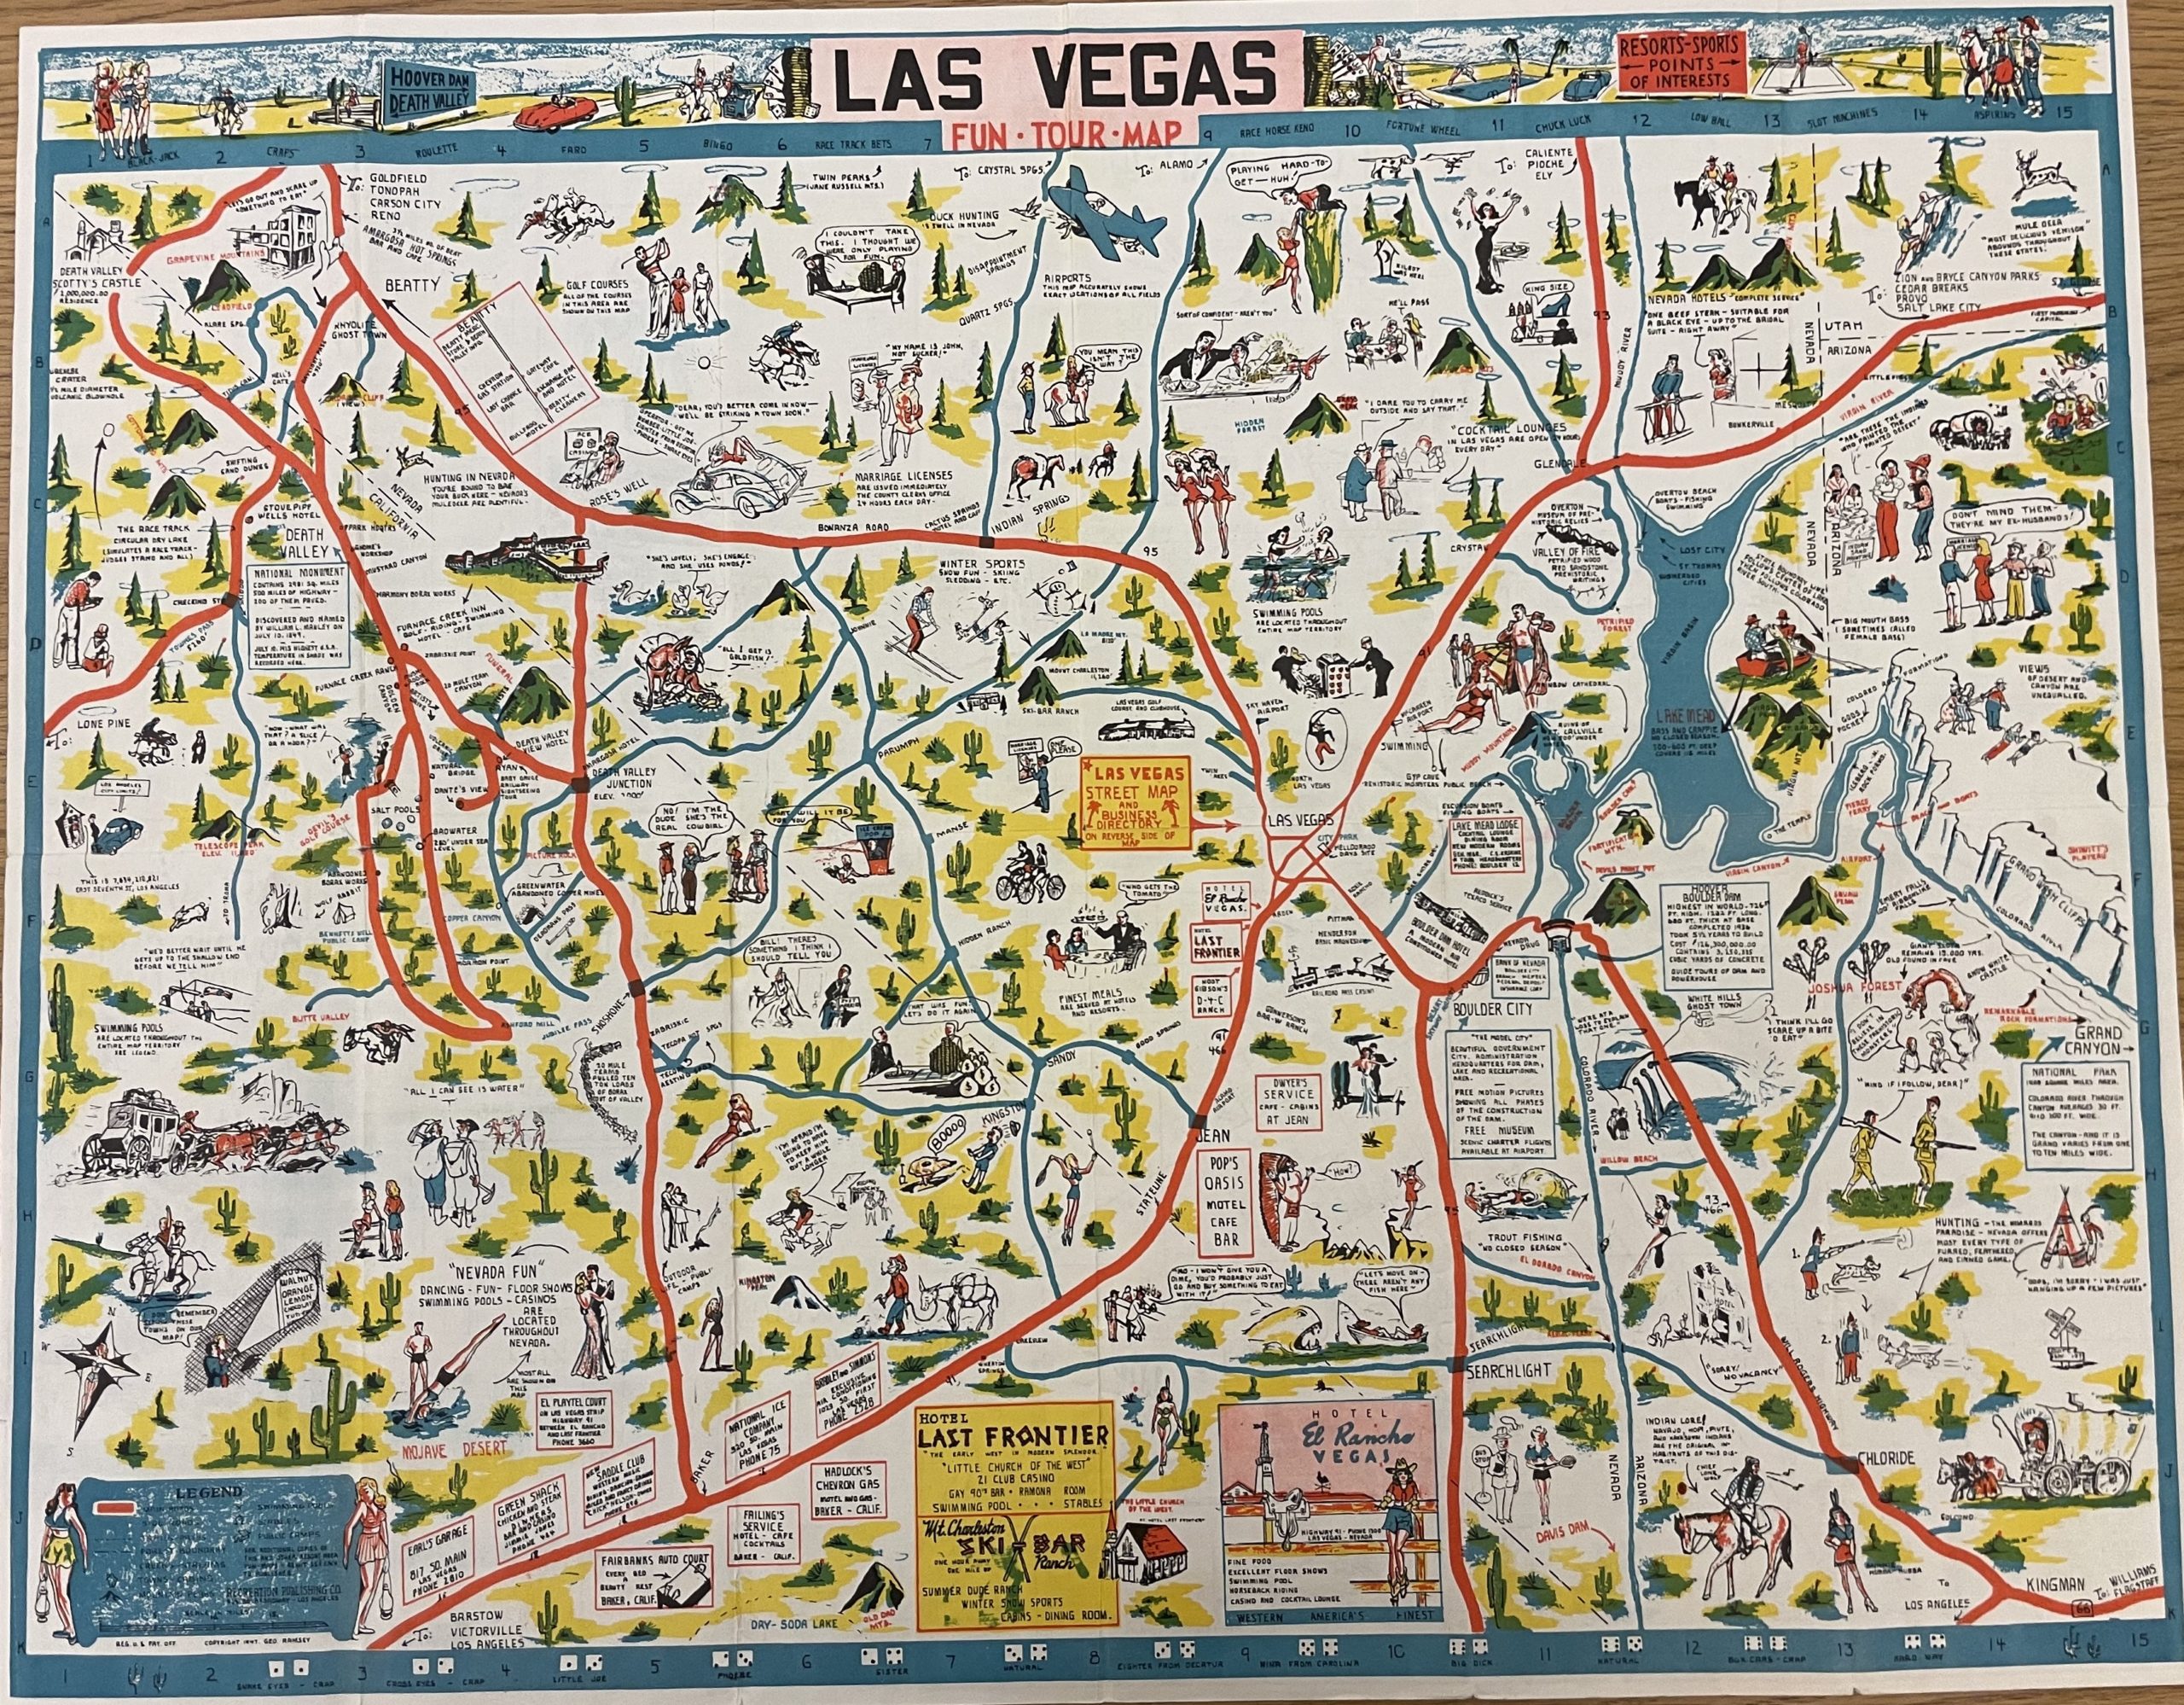 Las Vegas Tourist Map - 1947, Nevada State Museum